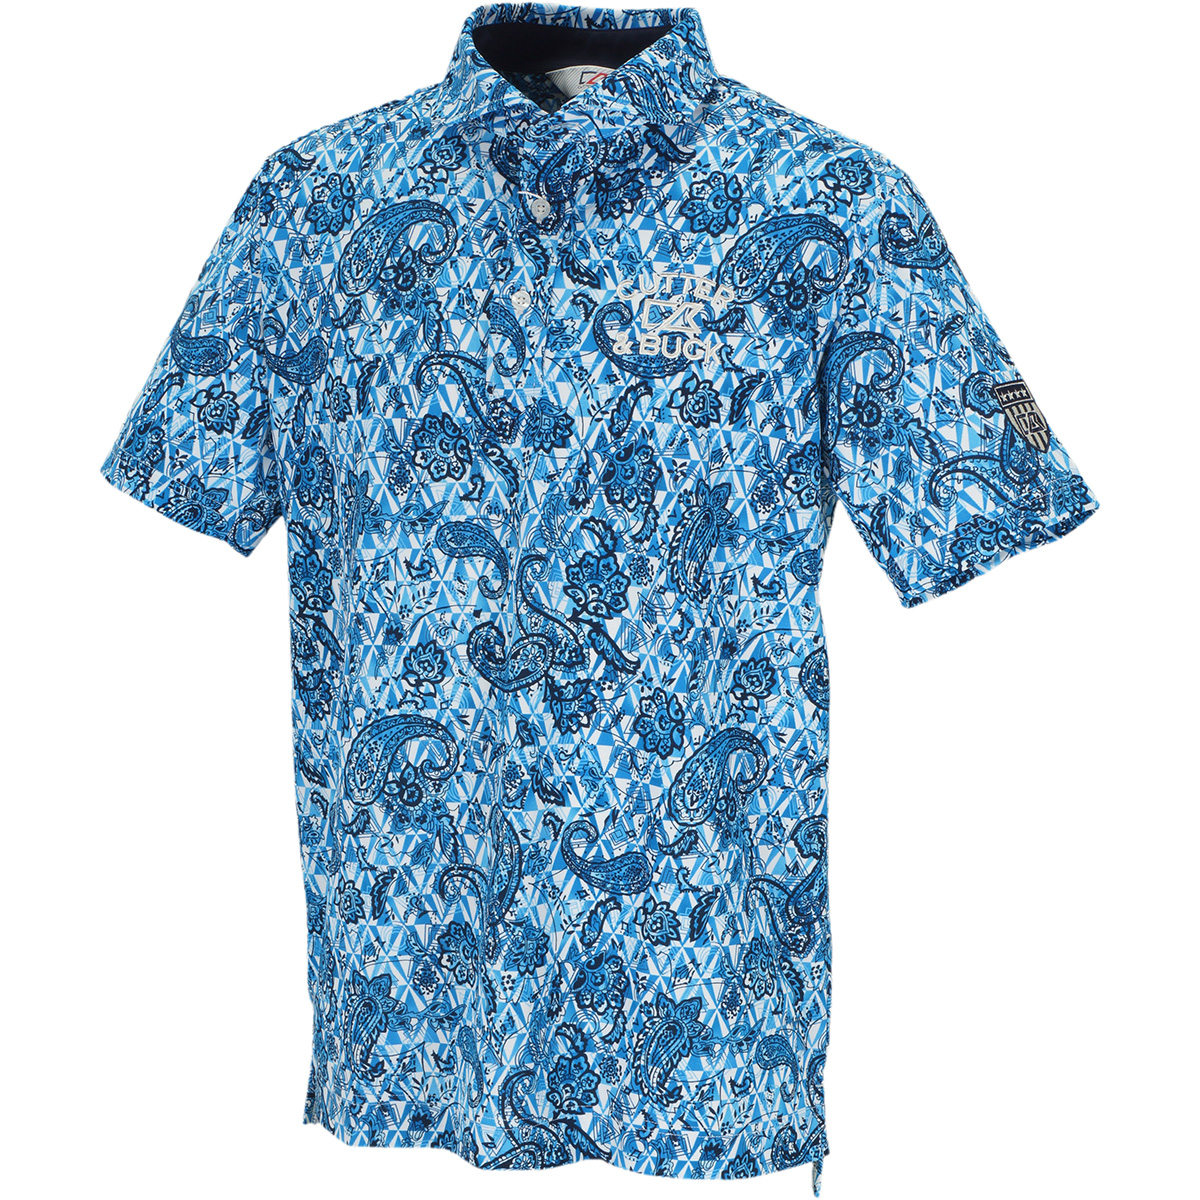  クーリストD-TECプリント ウインドカラー半袖ニットポロシャツ 